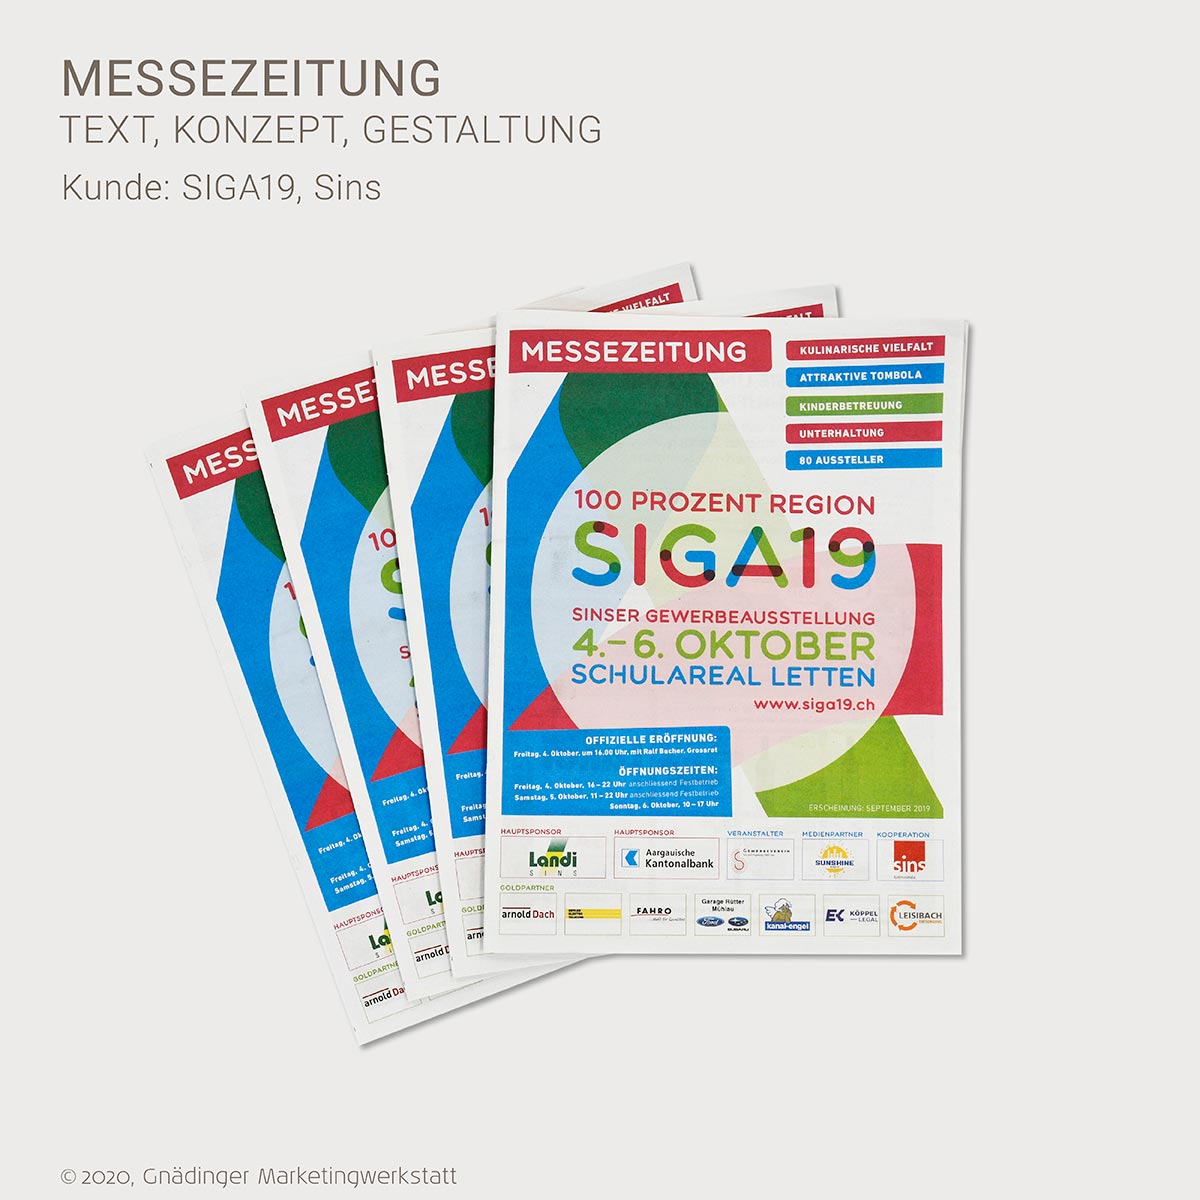 WEB1_GMW_Projekt_Siga19_messezeitung_01-2020_1200x1200px_RGB